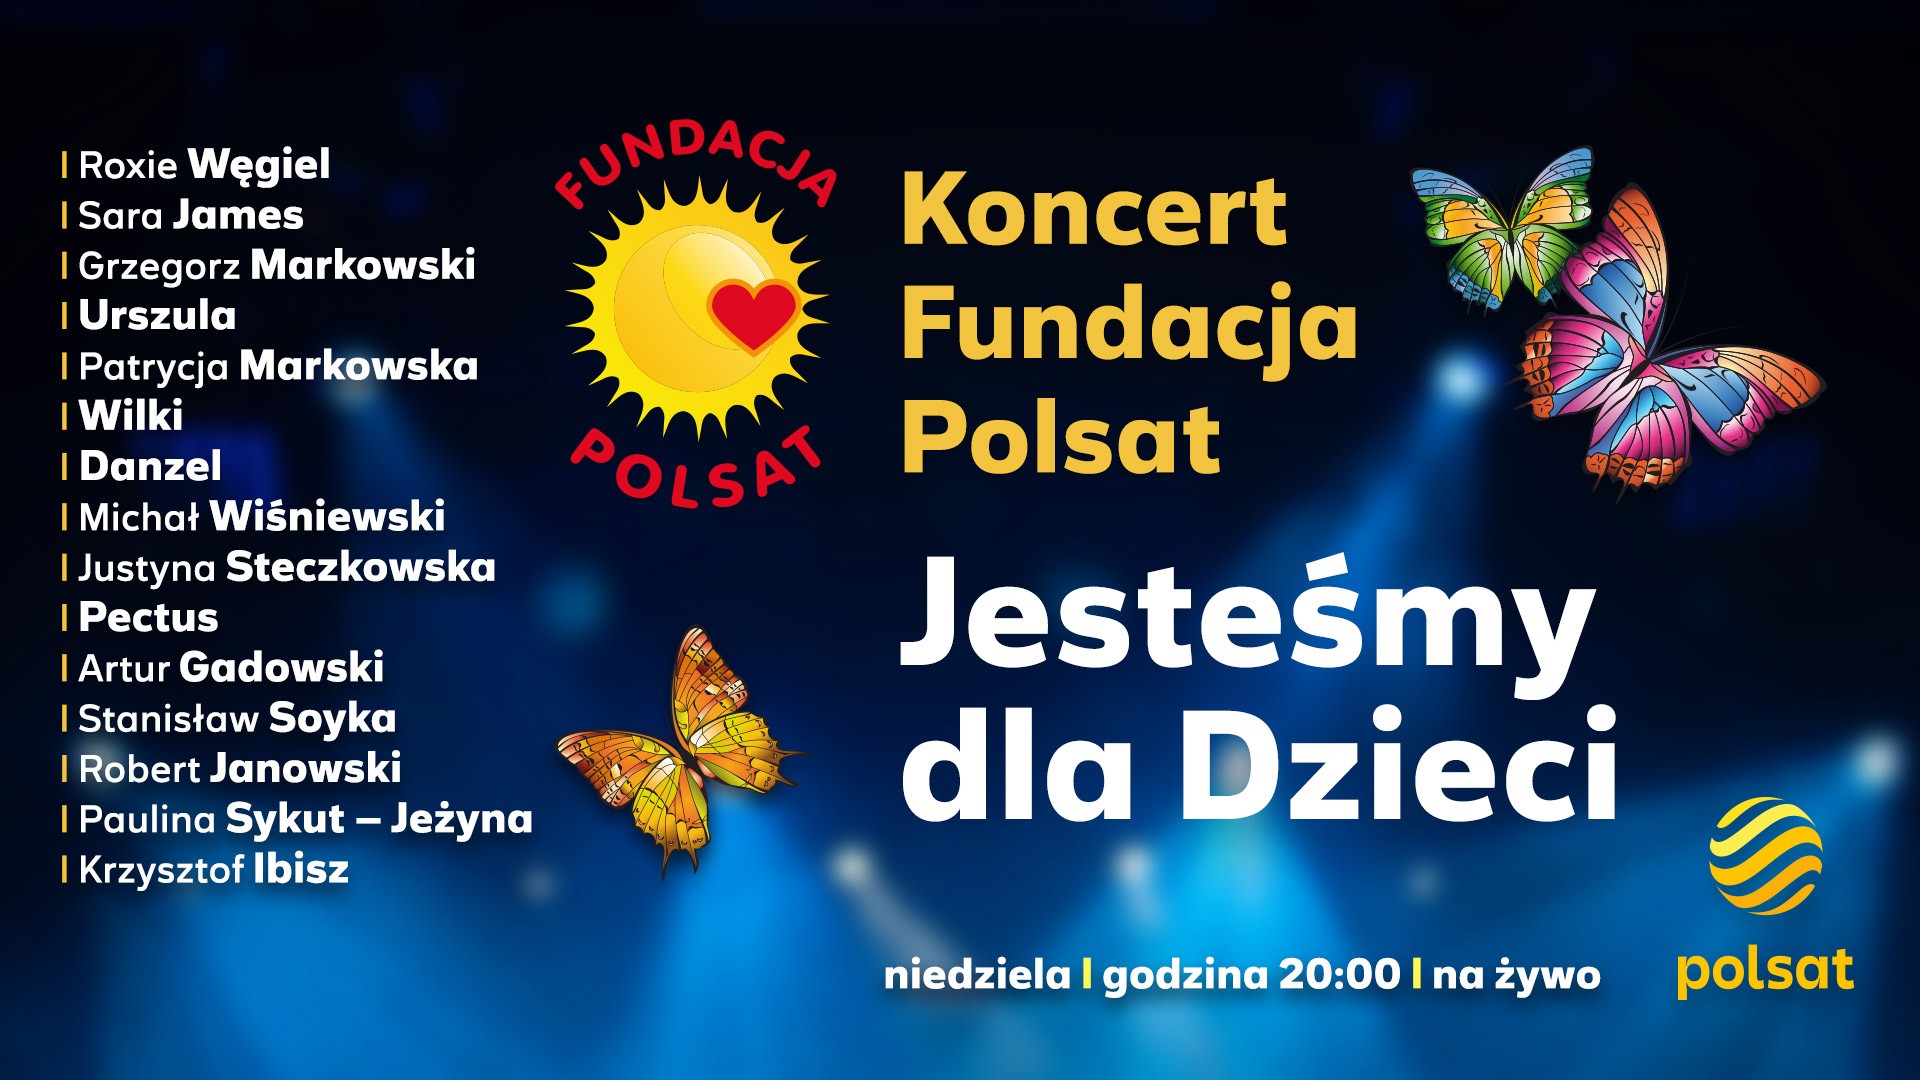 „Koncert Fundacja Polsat - Jesteśmy dla Dzieci”, czyli Dzień Dziecka w Skierniewicach